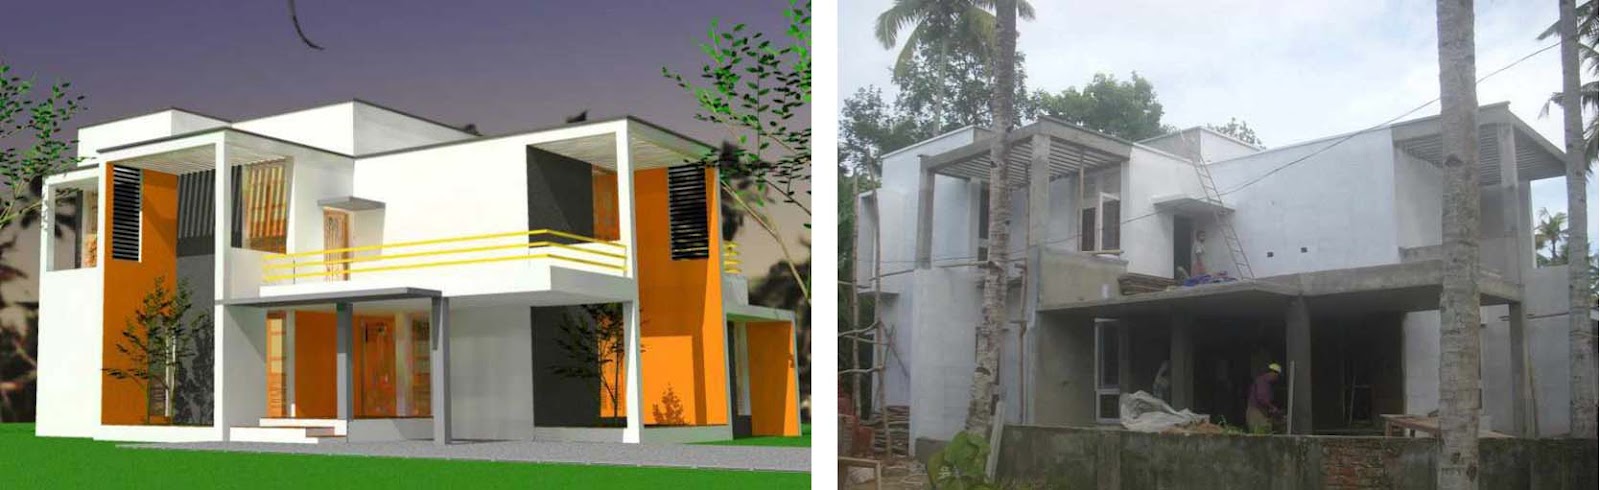 Houseinkerala Org Pergola In Kerala House Design